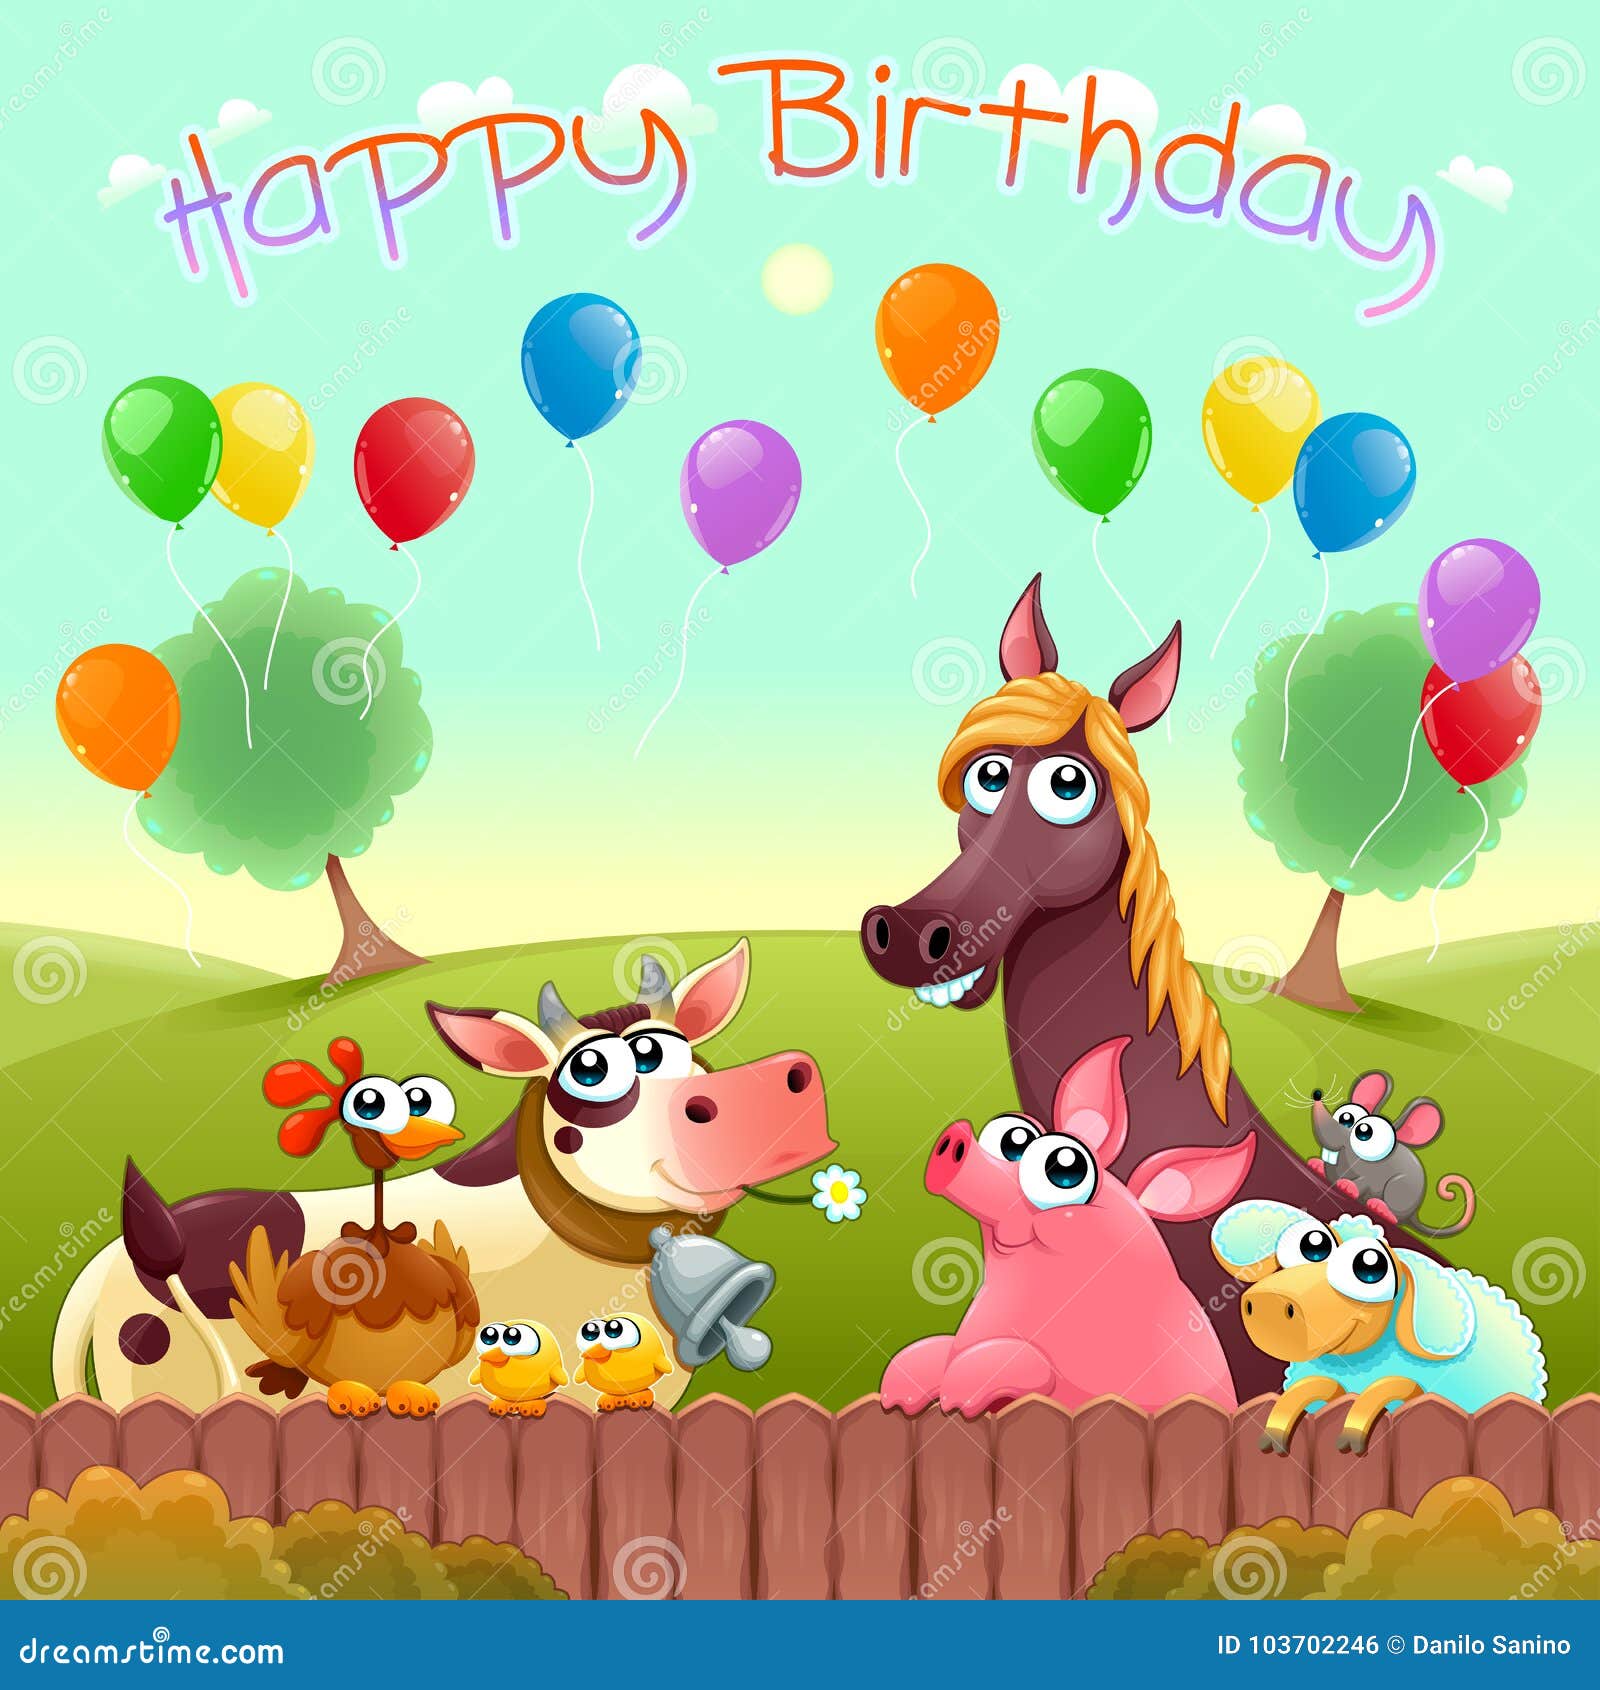 Biglietto Di Auguri Per Il Compleanno Felice Con Gli Animali Da Allevamento Svegli Nella Campagna Illustrazione Vettoriale Illustrazione Di Compleanno Scheda